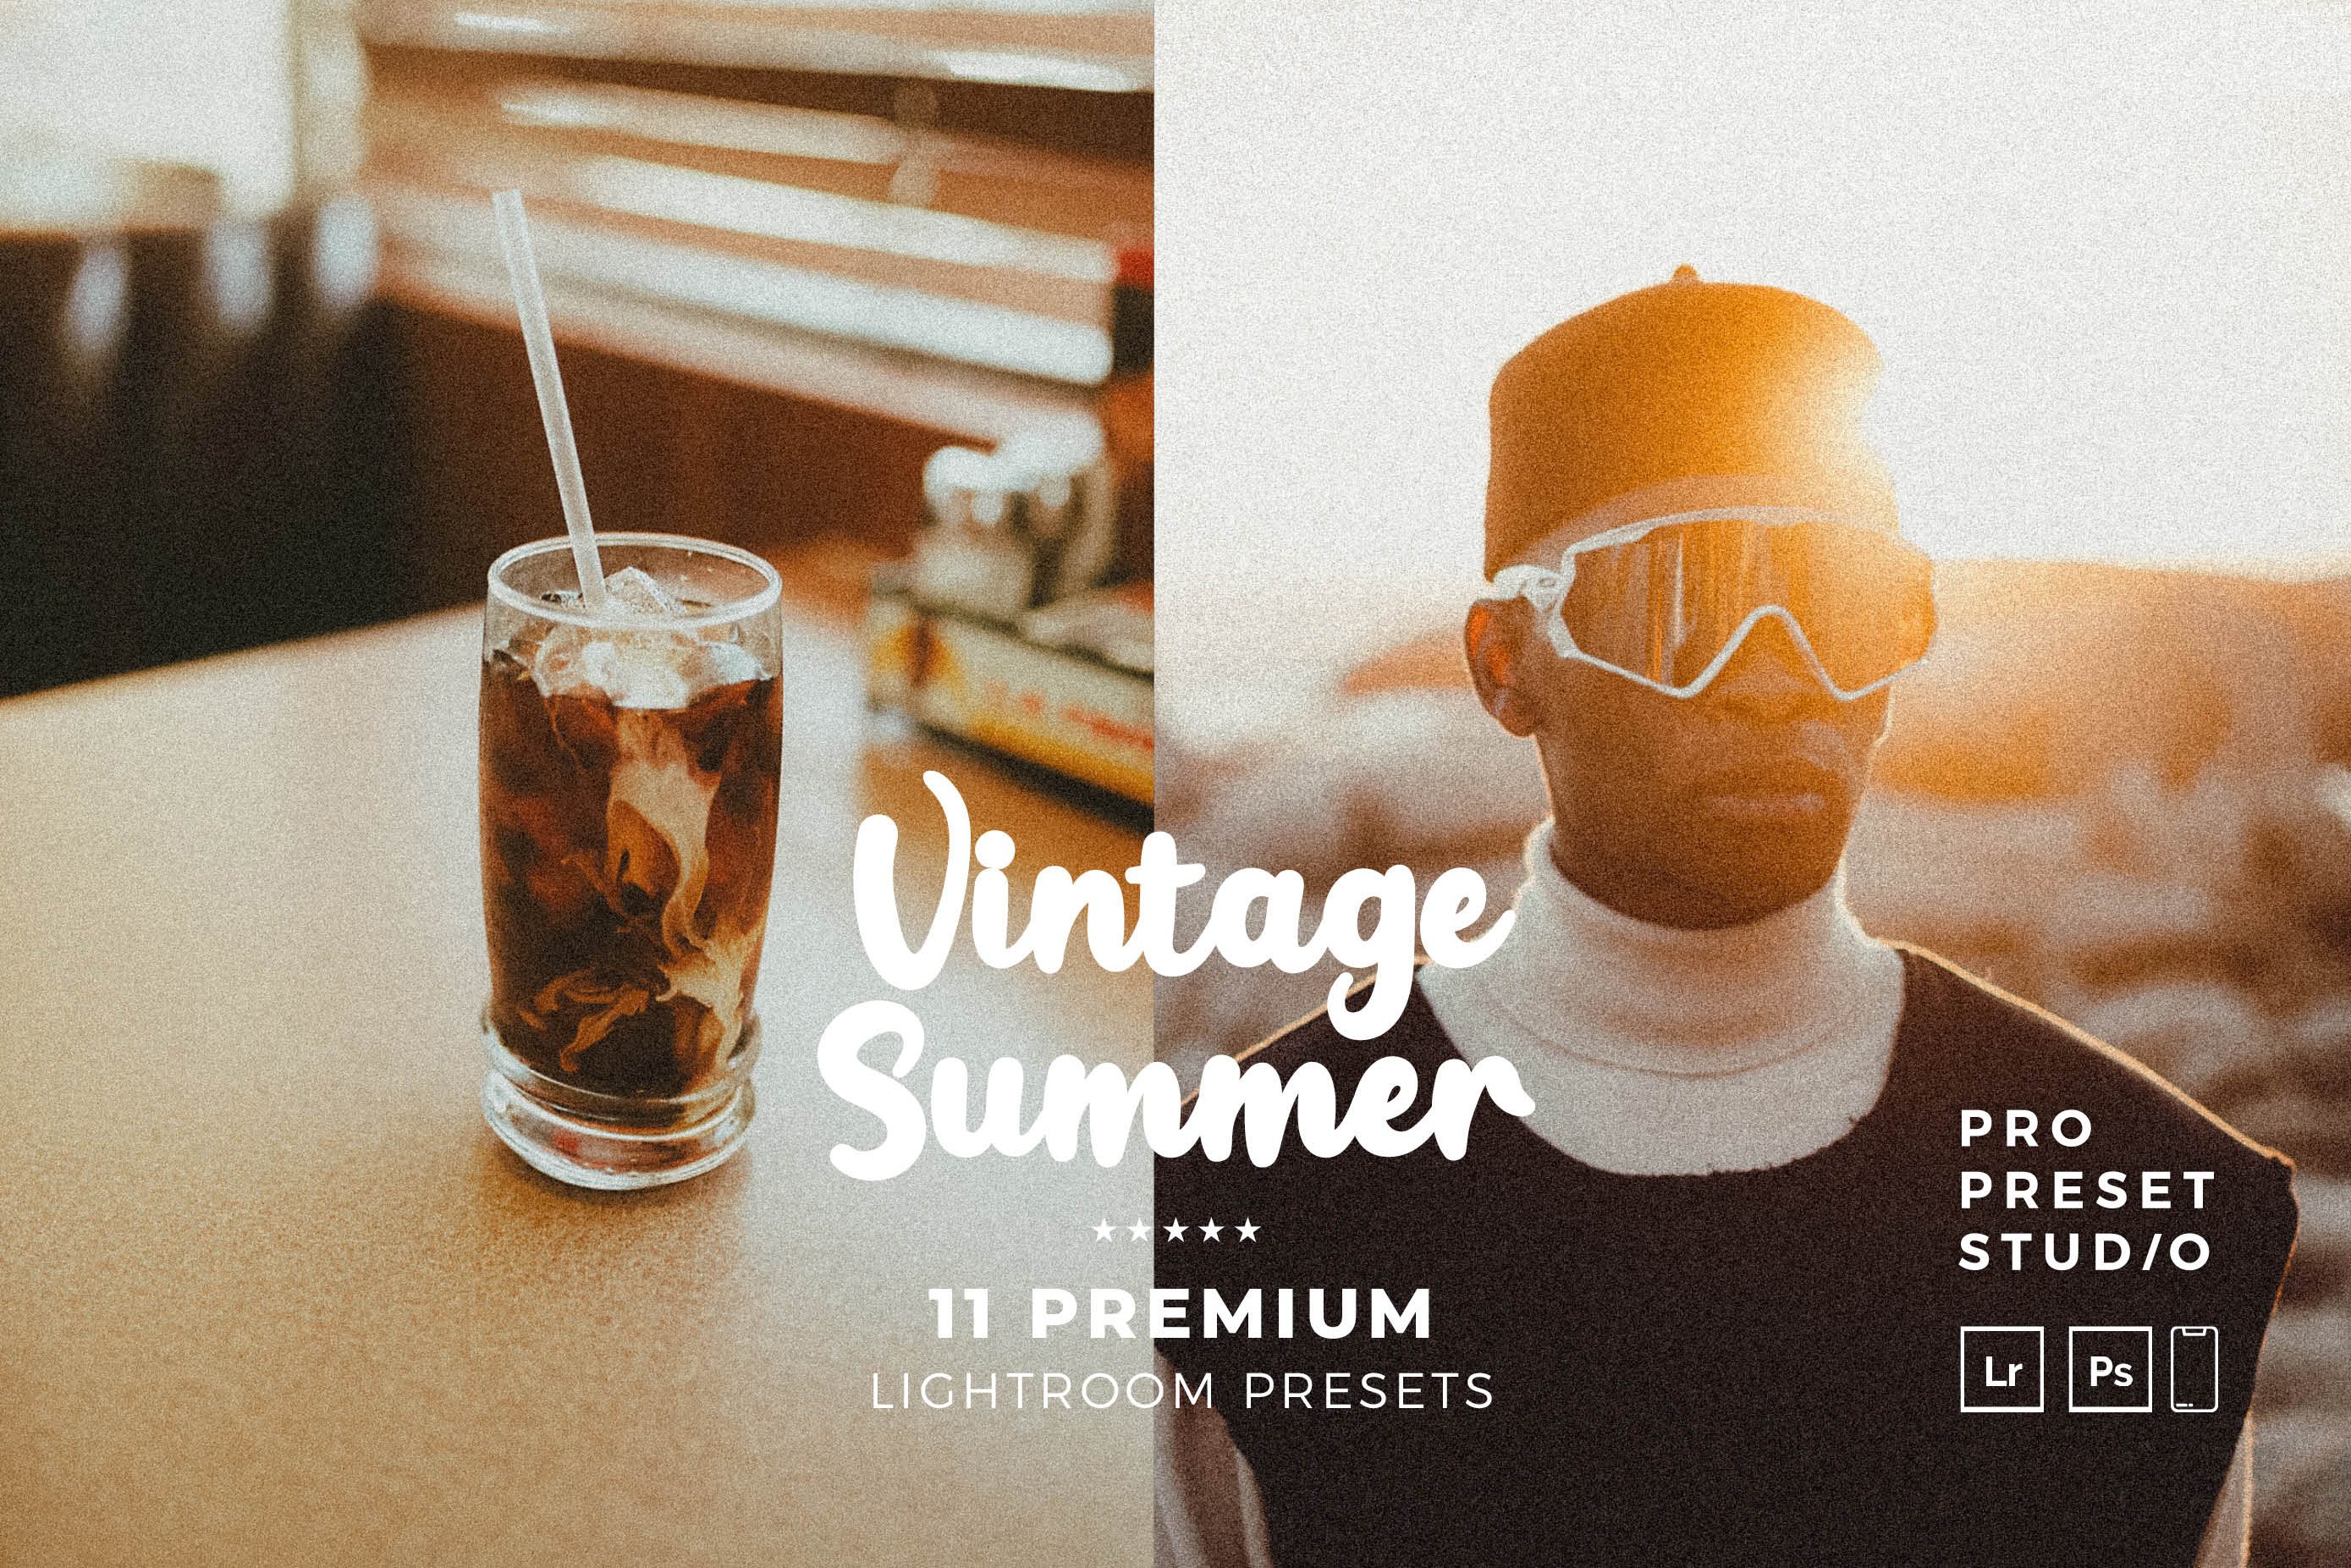 Vintage Summers Presets Lightroomcover image.